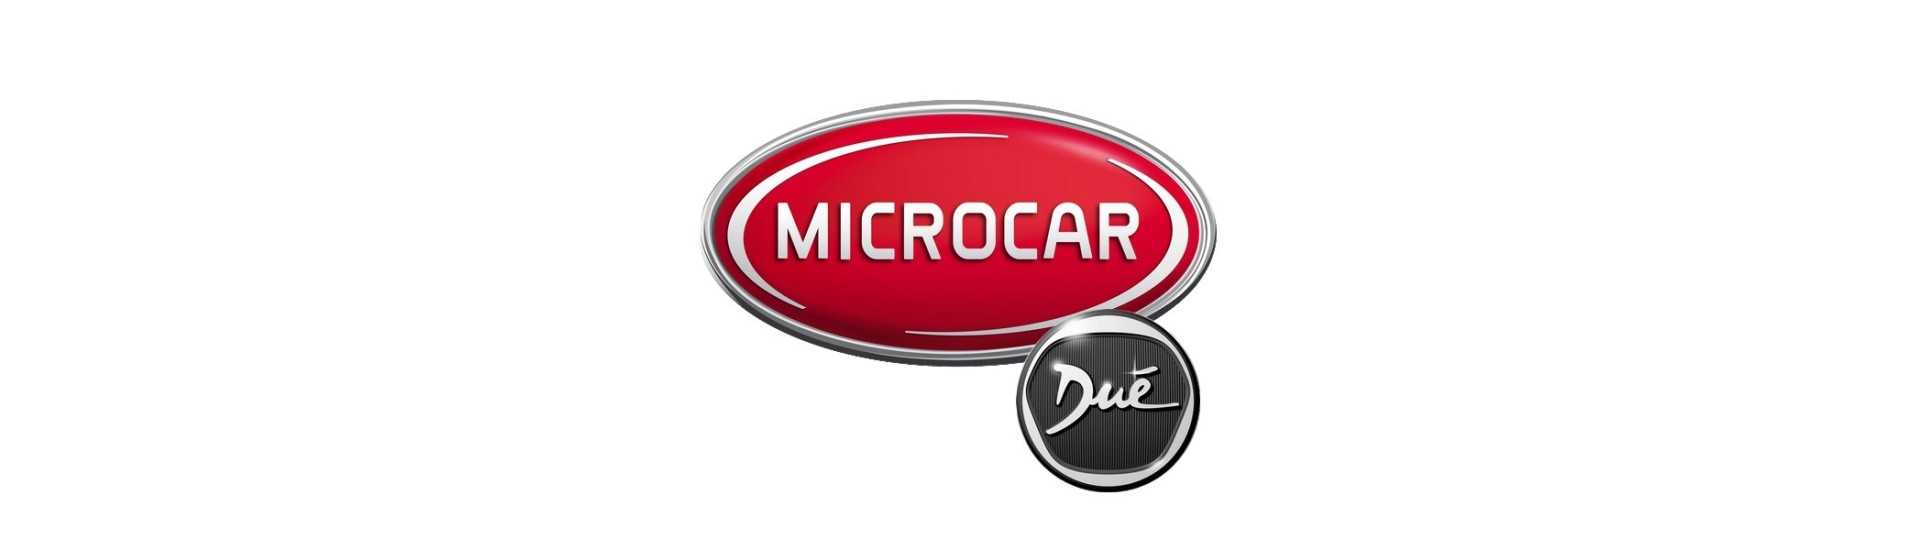 Bränslemätare till bästa bilpris utan tillstånd Microcar Dué